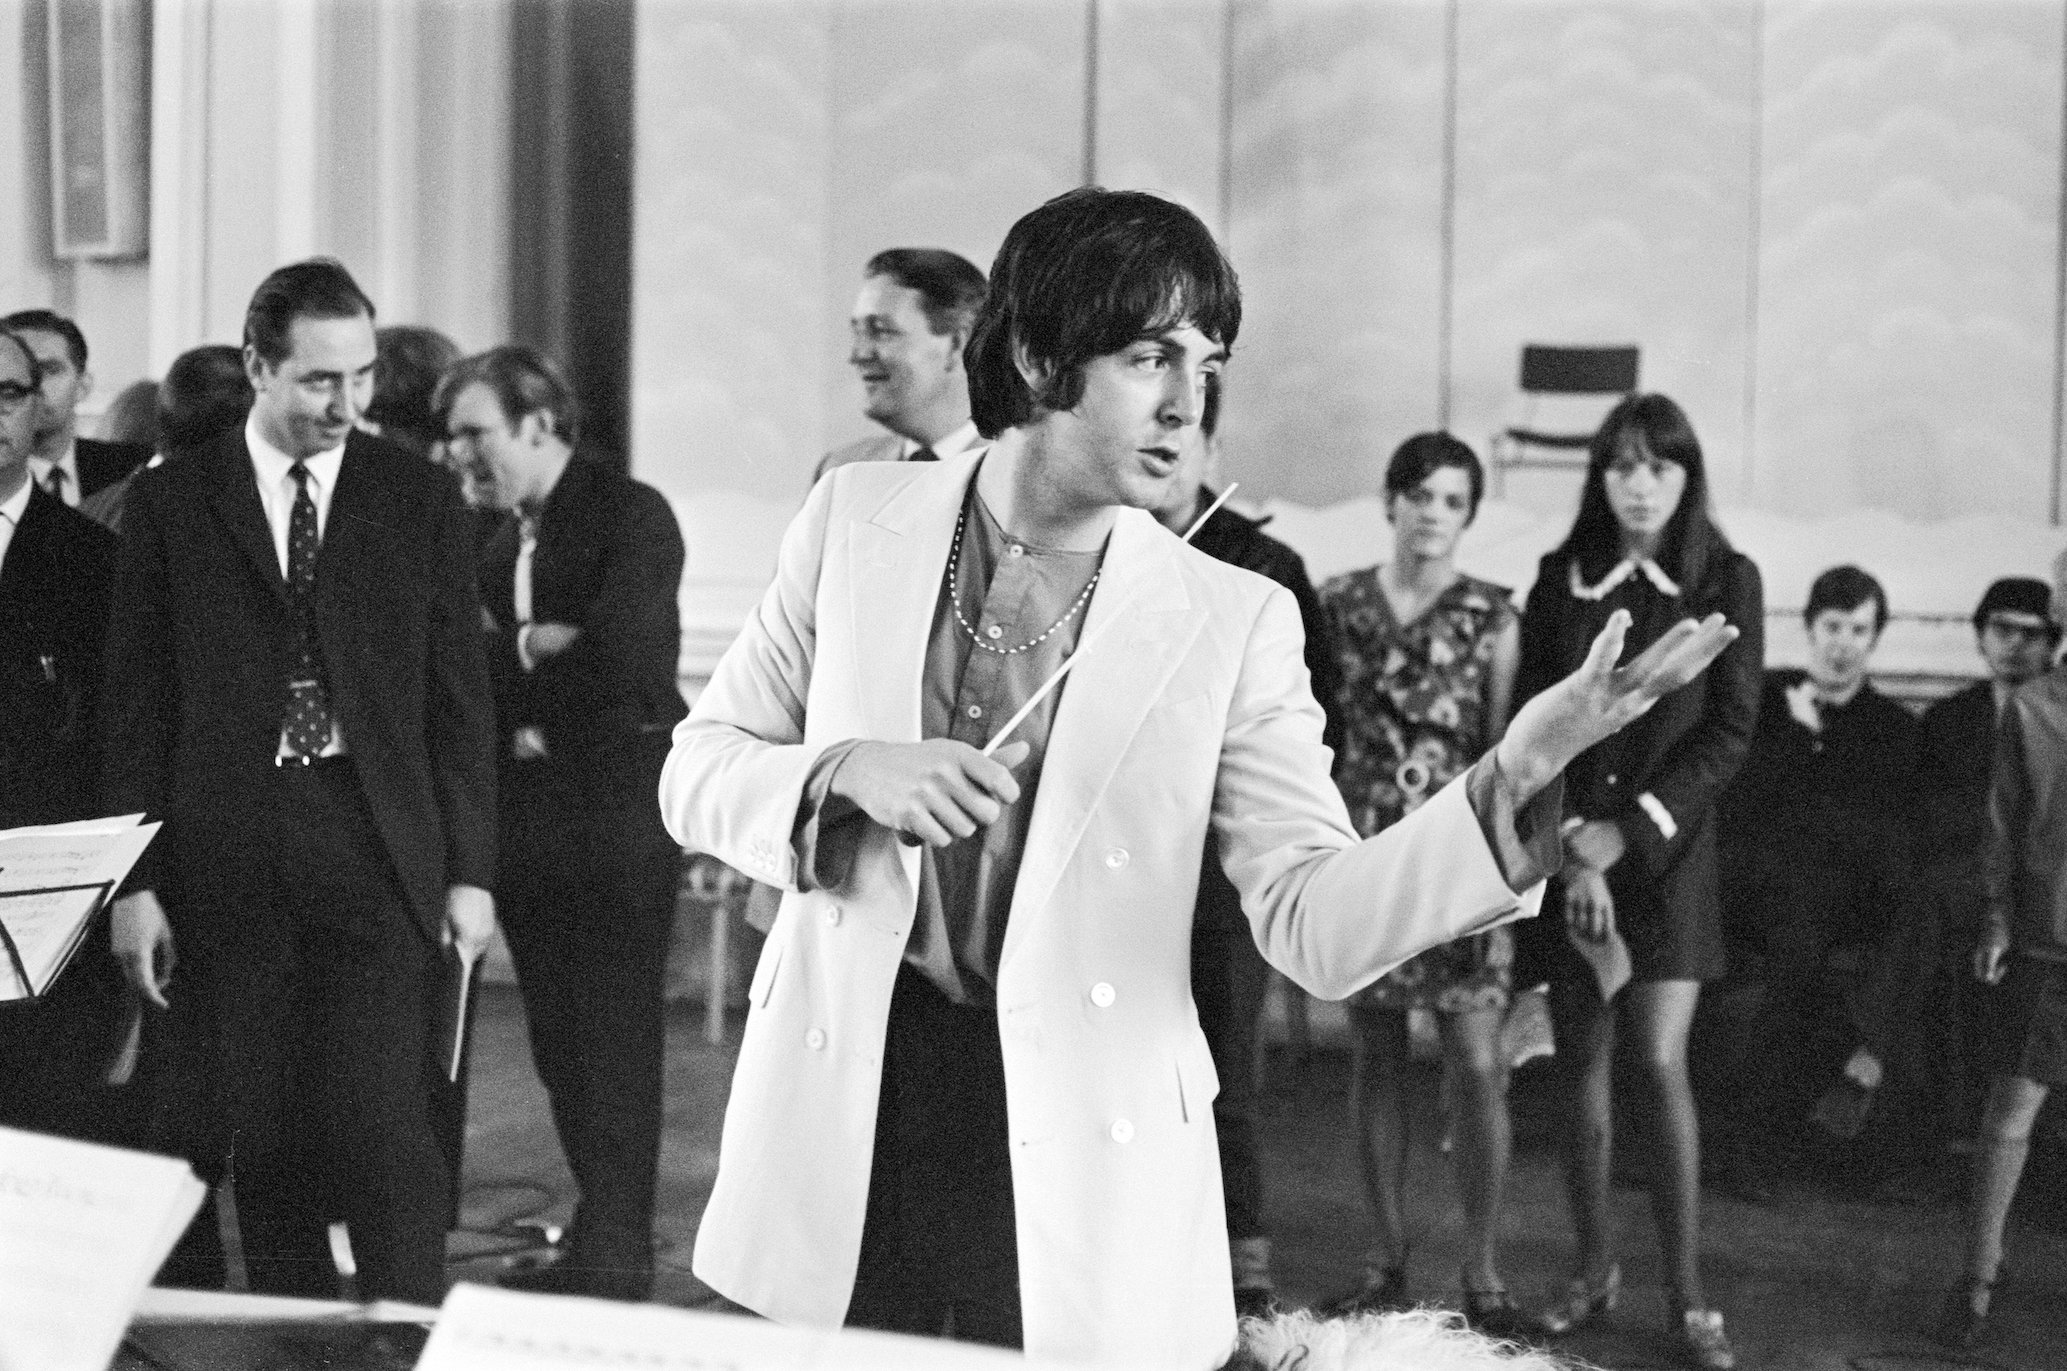 La canzone dei Beatles che Paul McCartney disse perfezionò "Elvis Echo"